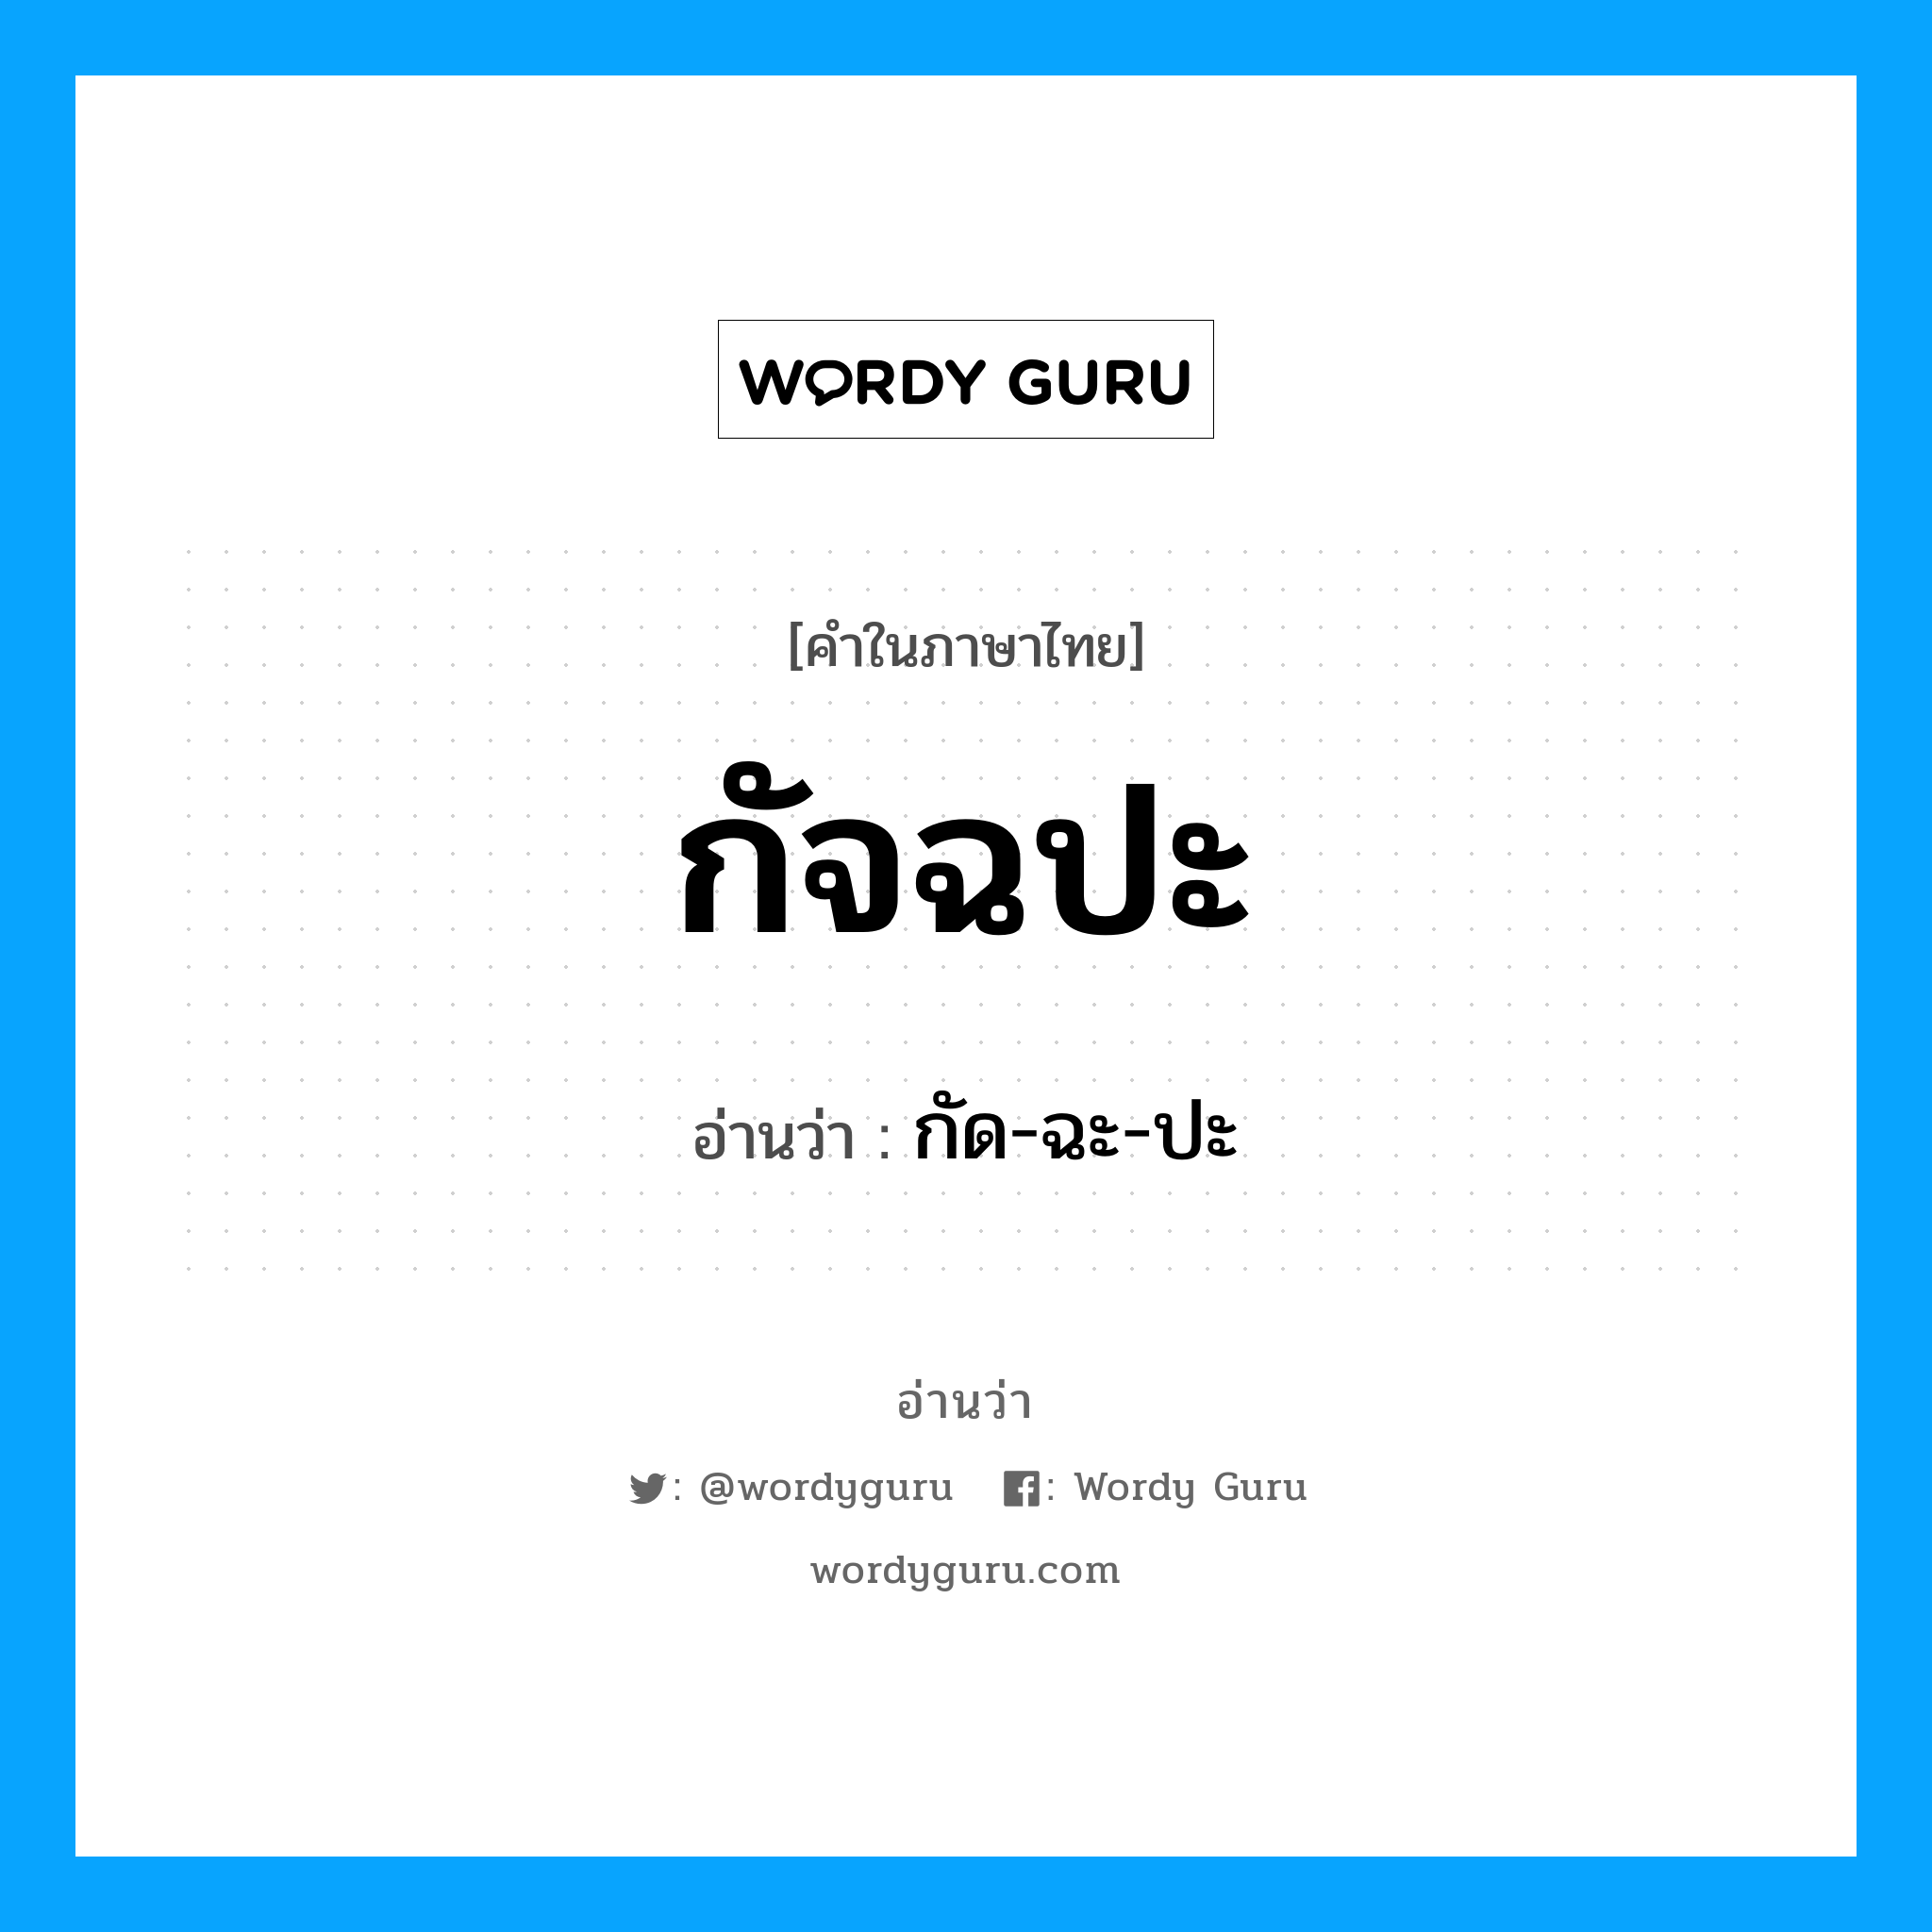 กัด-ฉะ-ปะ เป็นคำอ่านของคำไหน?, คำในภาษาไทย กัด-ฉะ-ปะ อ่านว่า กัจฉปะ